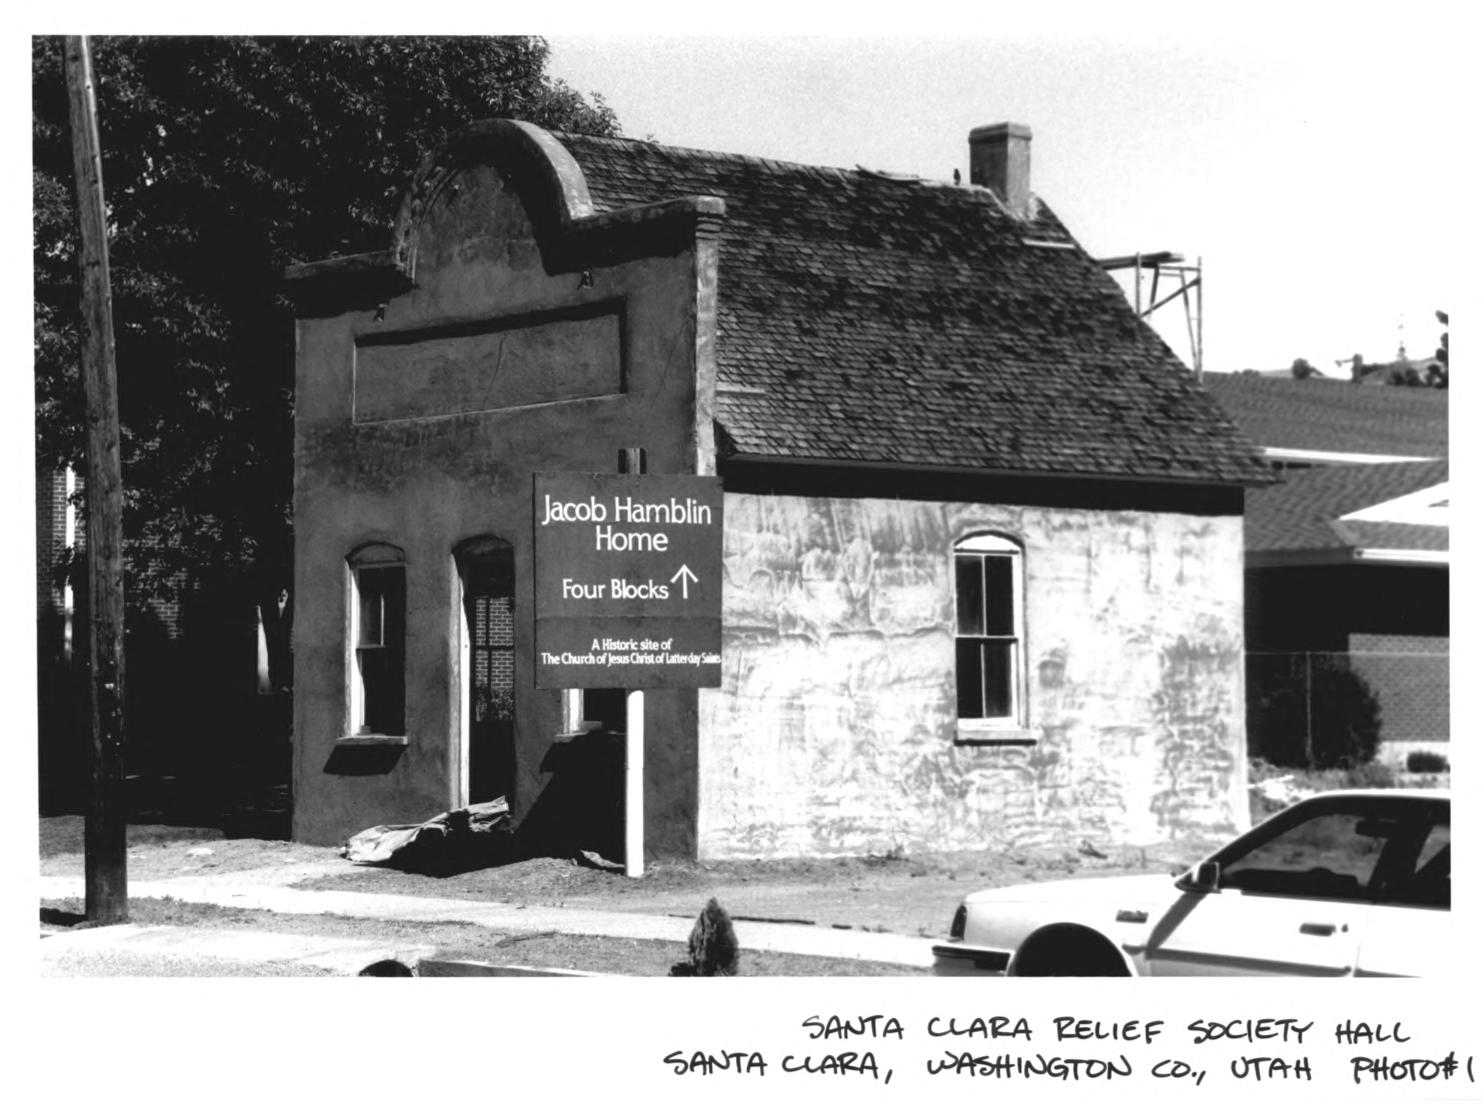 Santa Clara Relief Society House